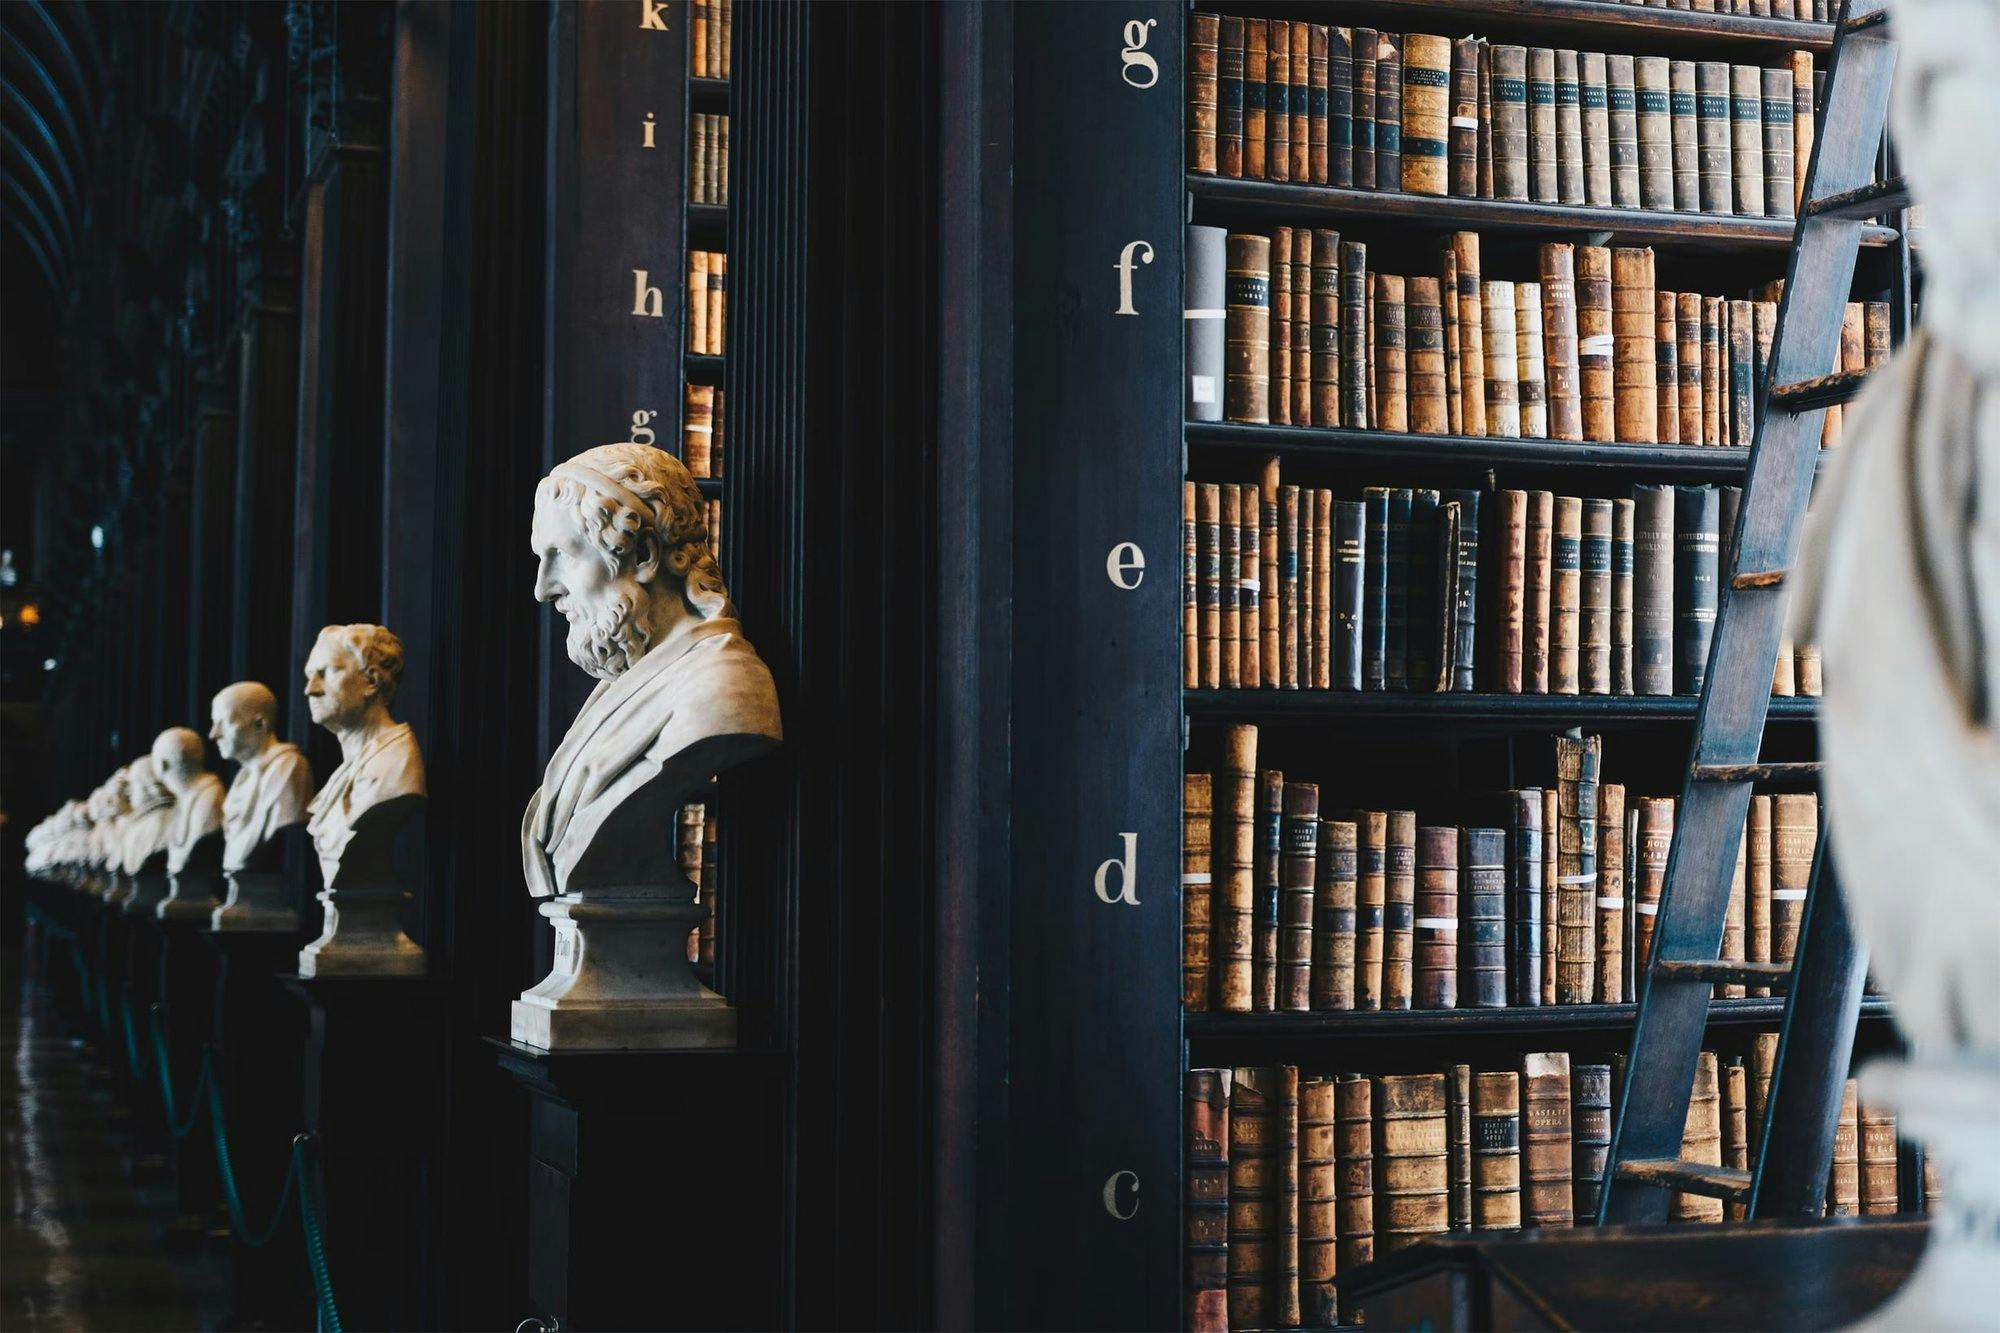 Büherregale und weiße Büsten in einer alten Bibliothek